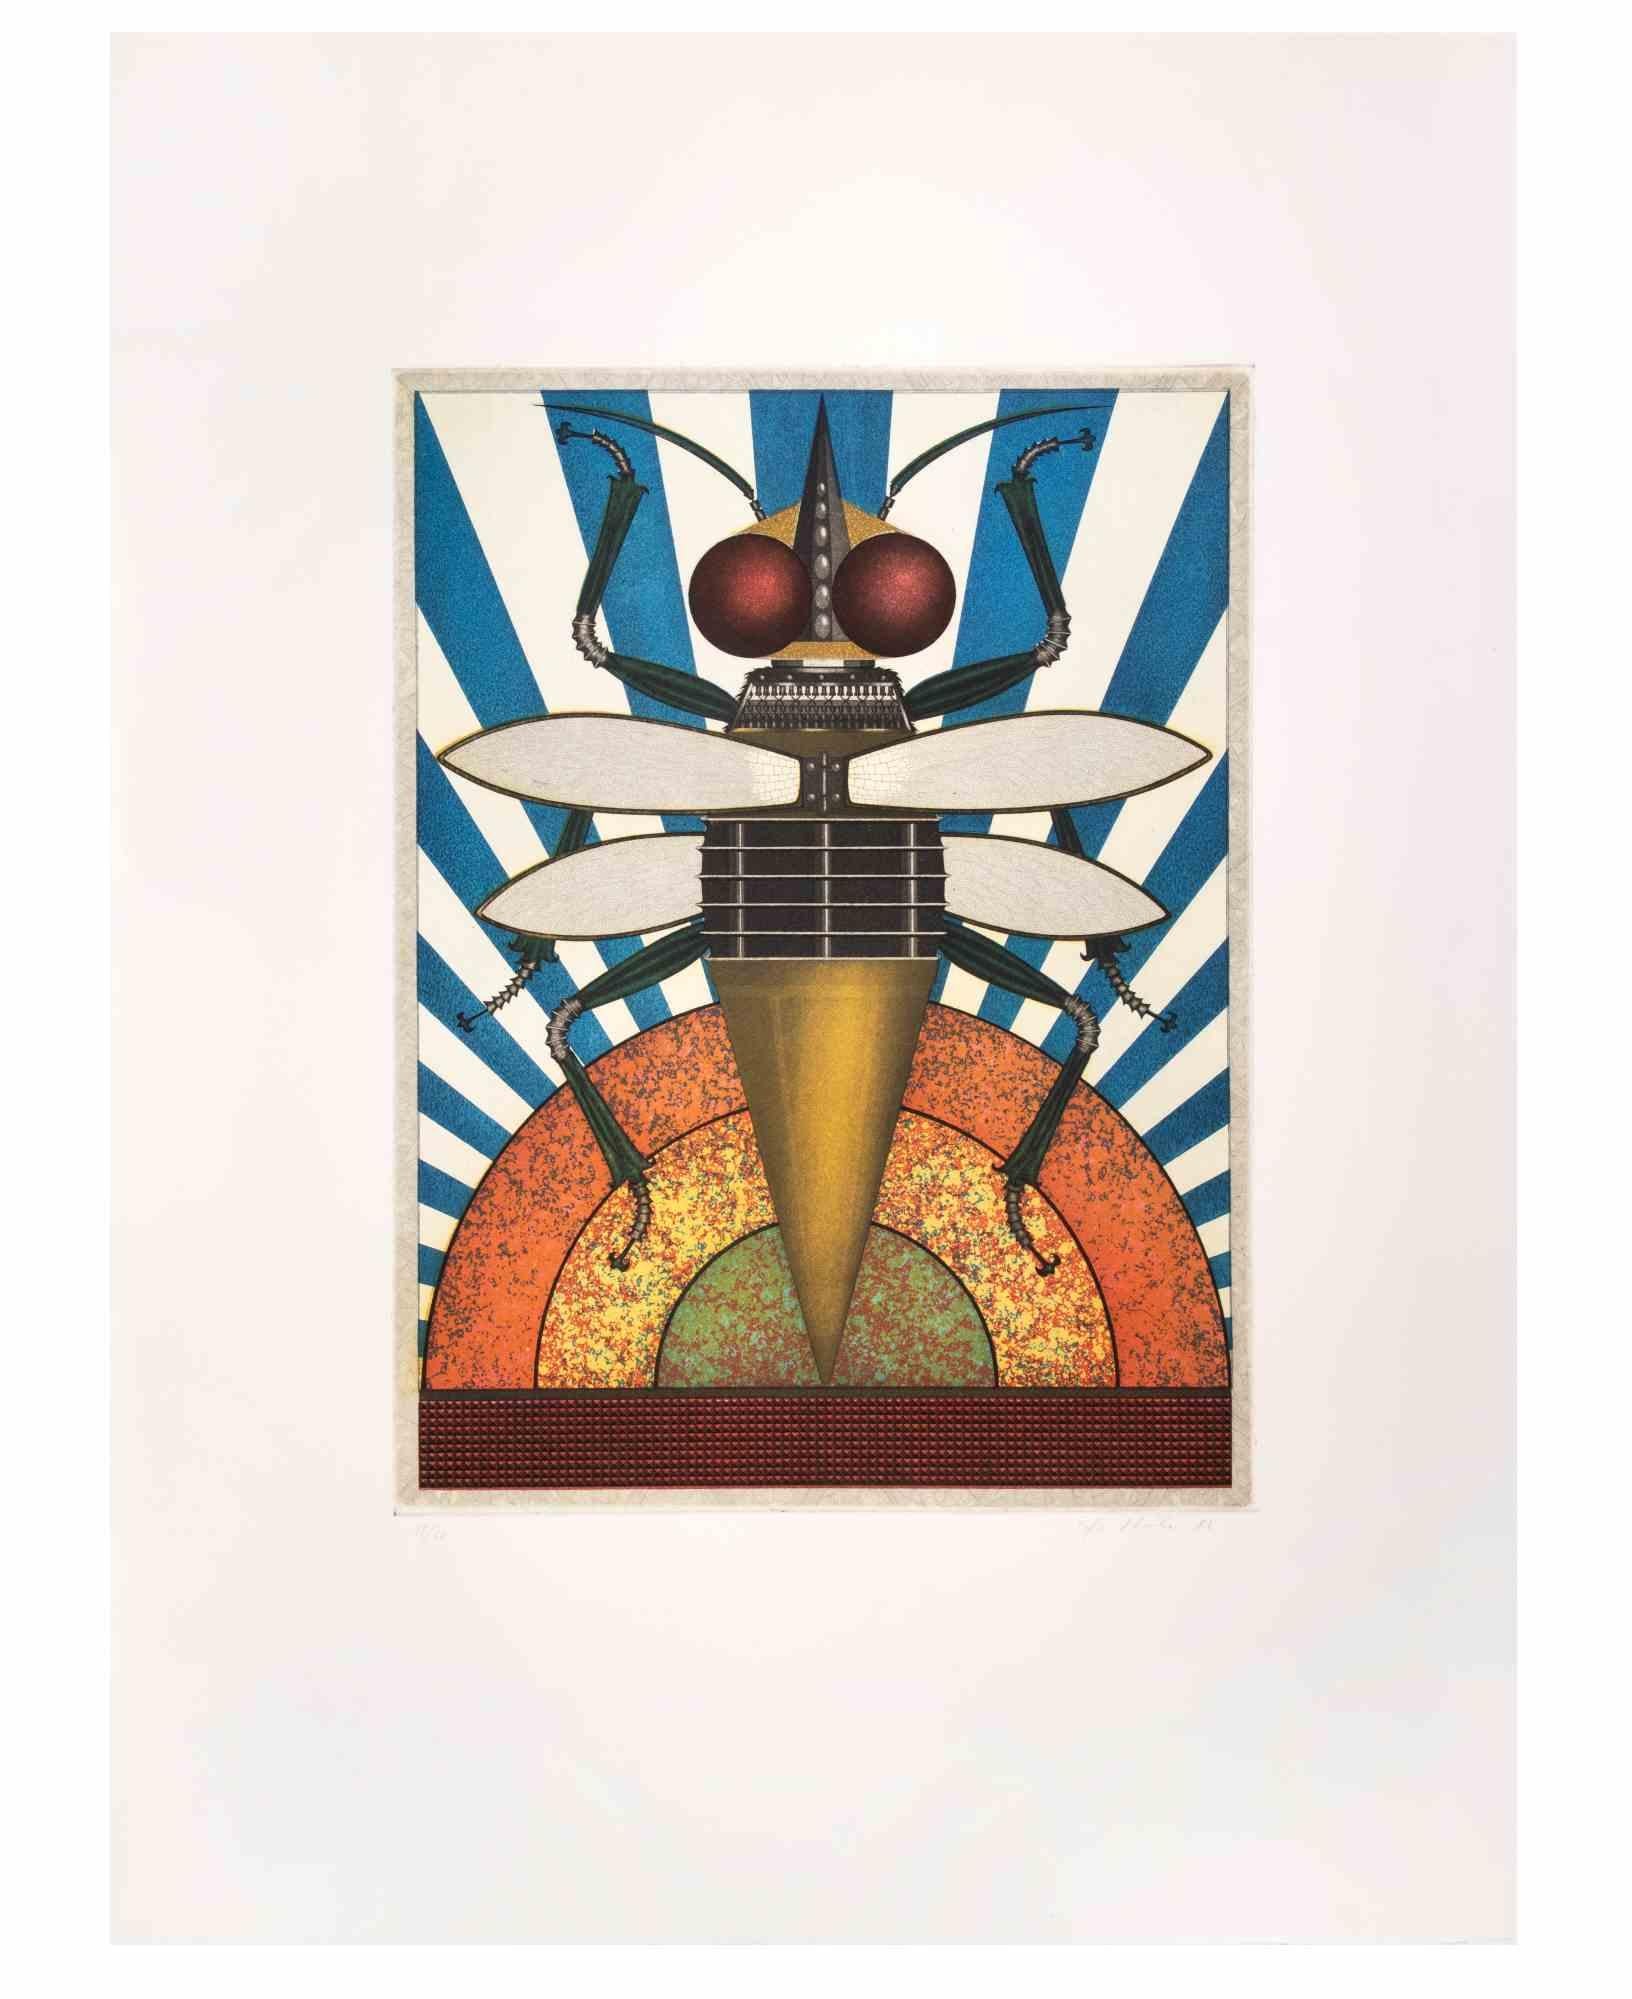 Insekt II est une œuvre d'art contemporain réalisée par l'artiste Fifo Stricker en 1982.

Aquatinte et gravure en couleurs mixtes.

Signé et daté à la main par l'artiste dans la marge inférieure droite.

Numéroté dans la marge inférieure gauche.